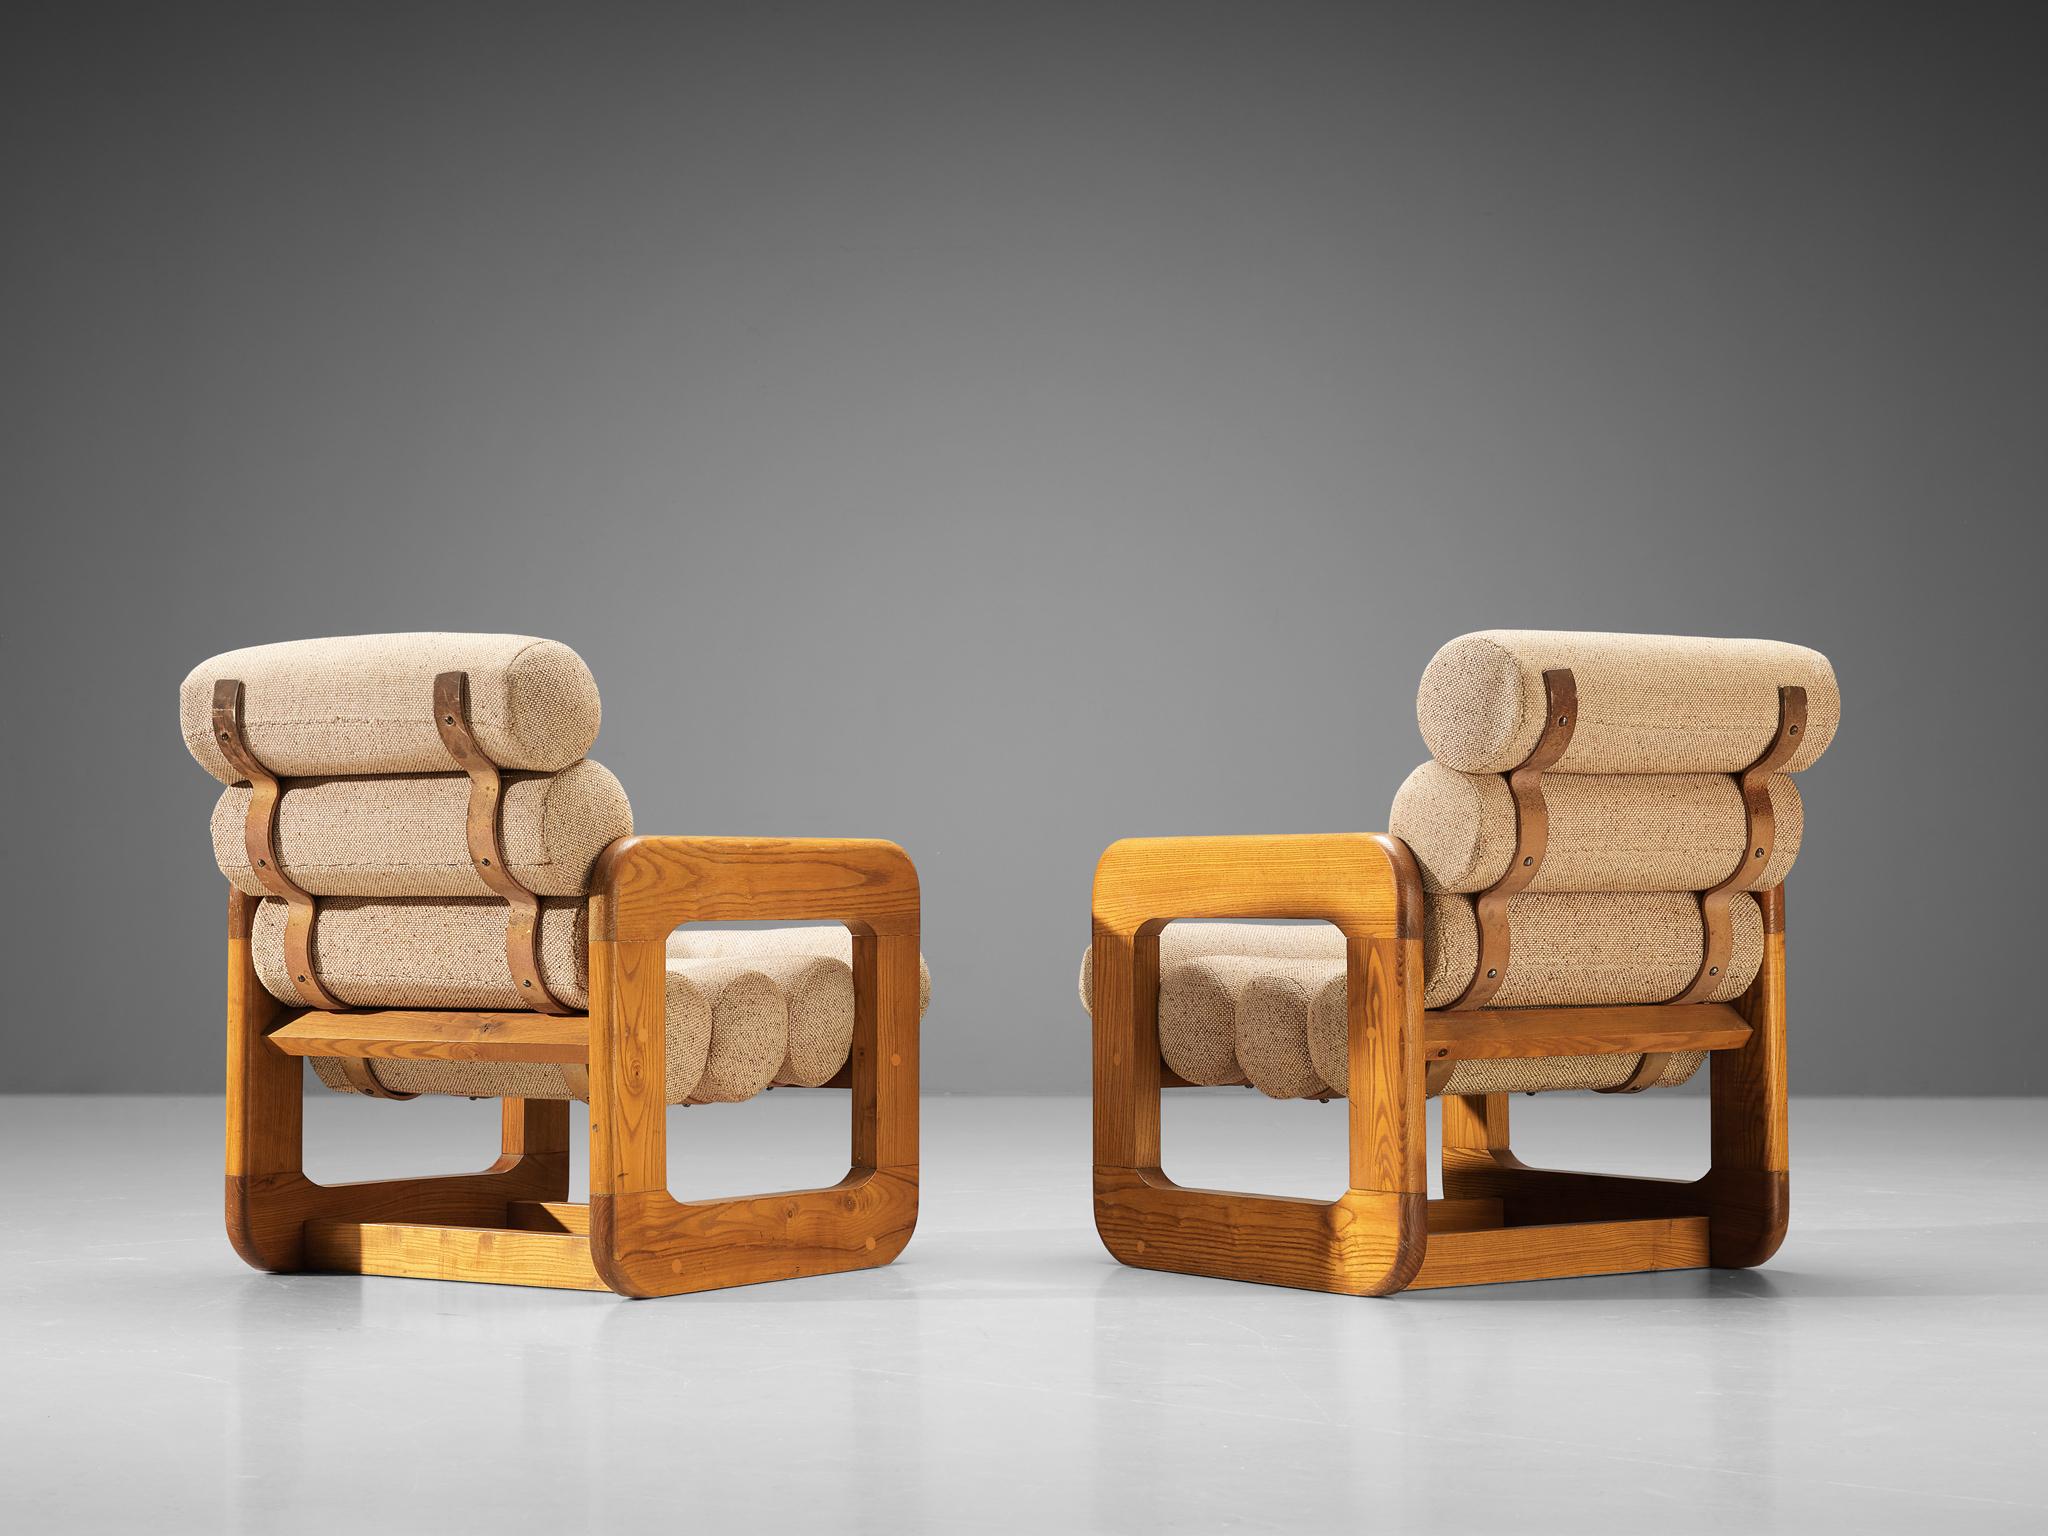 Sessel, Esche, Stoff, Europa, 1970er Jahre. 

Zwei unkonventionelle Loungesessel, die sich durch ihr außergewöhnliches Design auszeichnen. Die Sitzfläche besteht aus mehreren röhrenförmigen Kissen, die miteinander verbunden sind und eine Sitzfläche